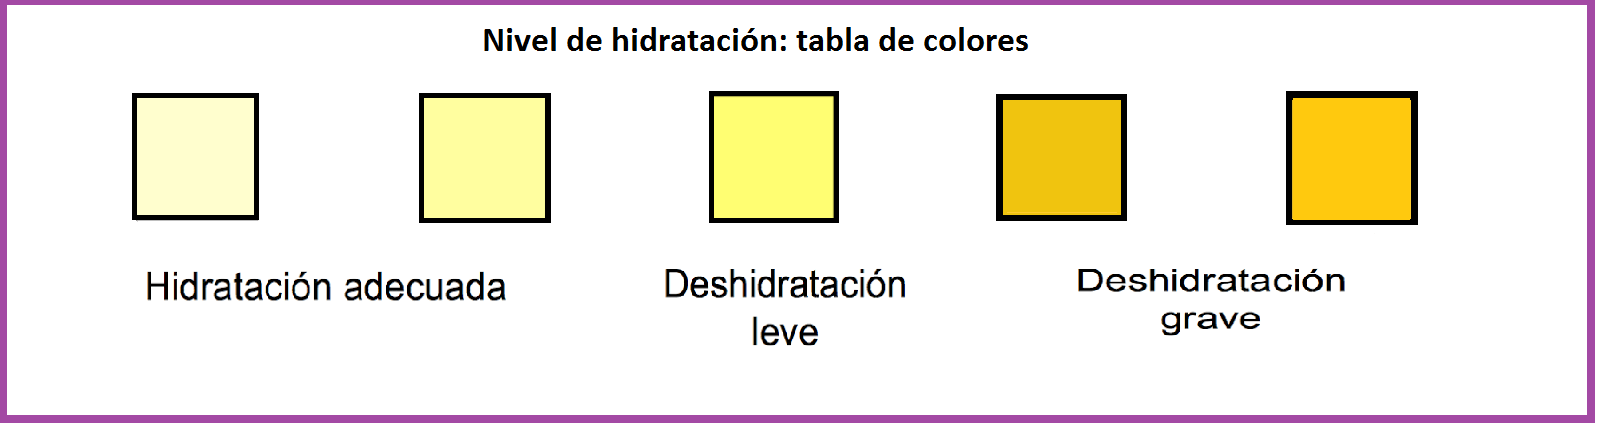 Color de orina según deshidratación